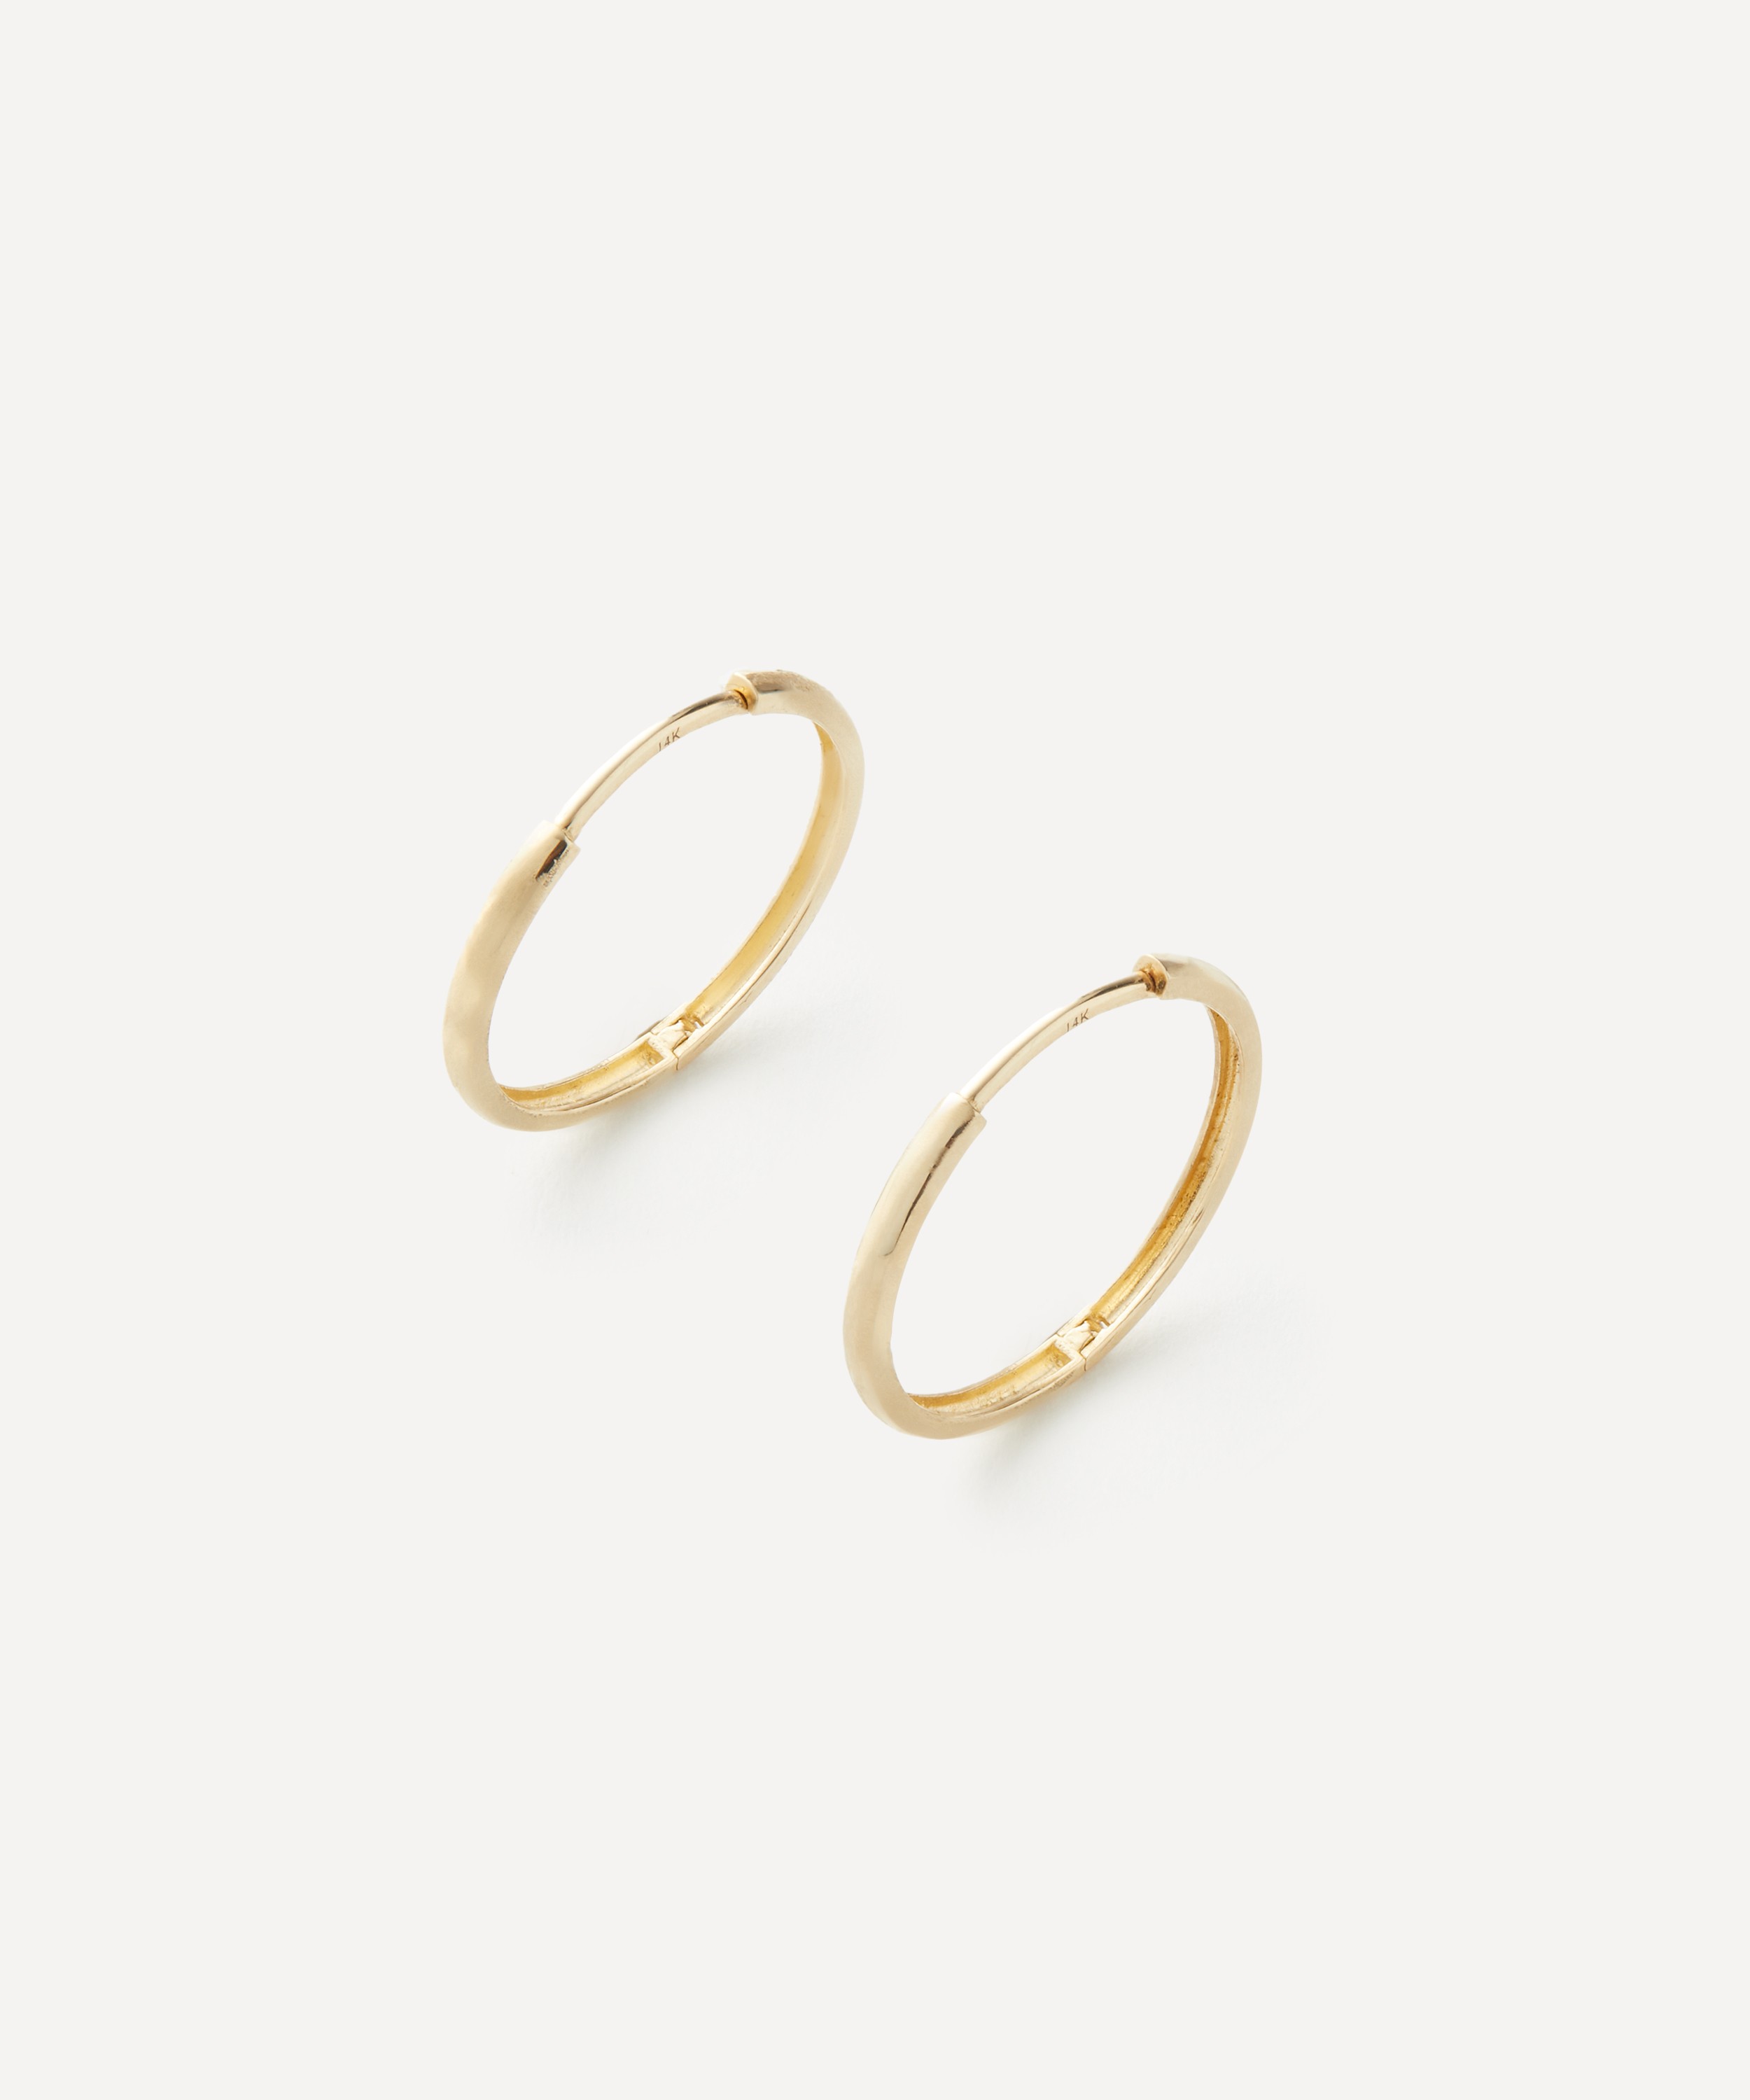 Ellis Mhairi Cameron - 14ct Gold LI Textured Hoop Earrings